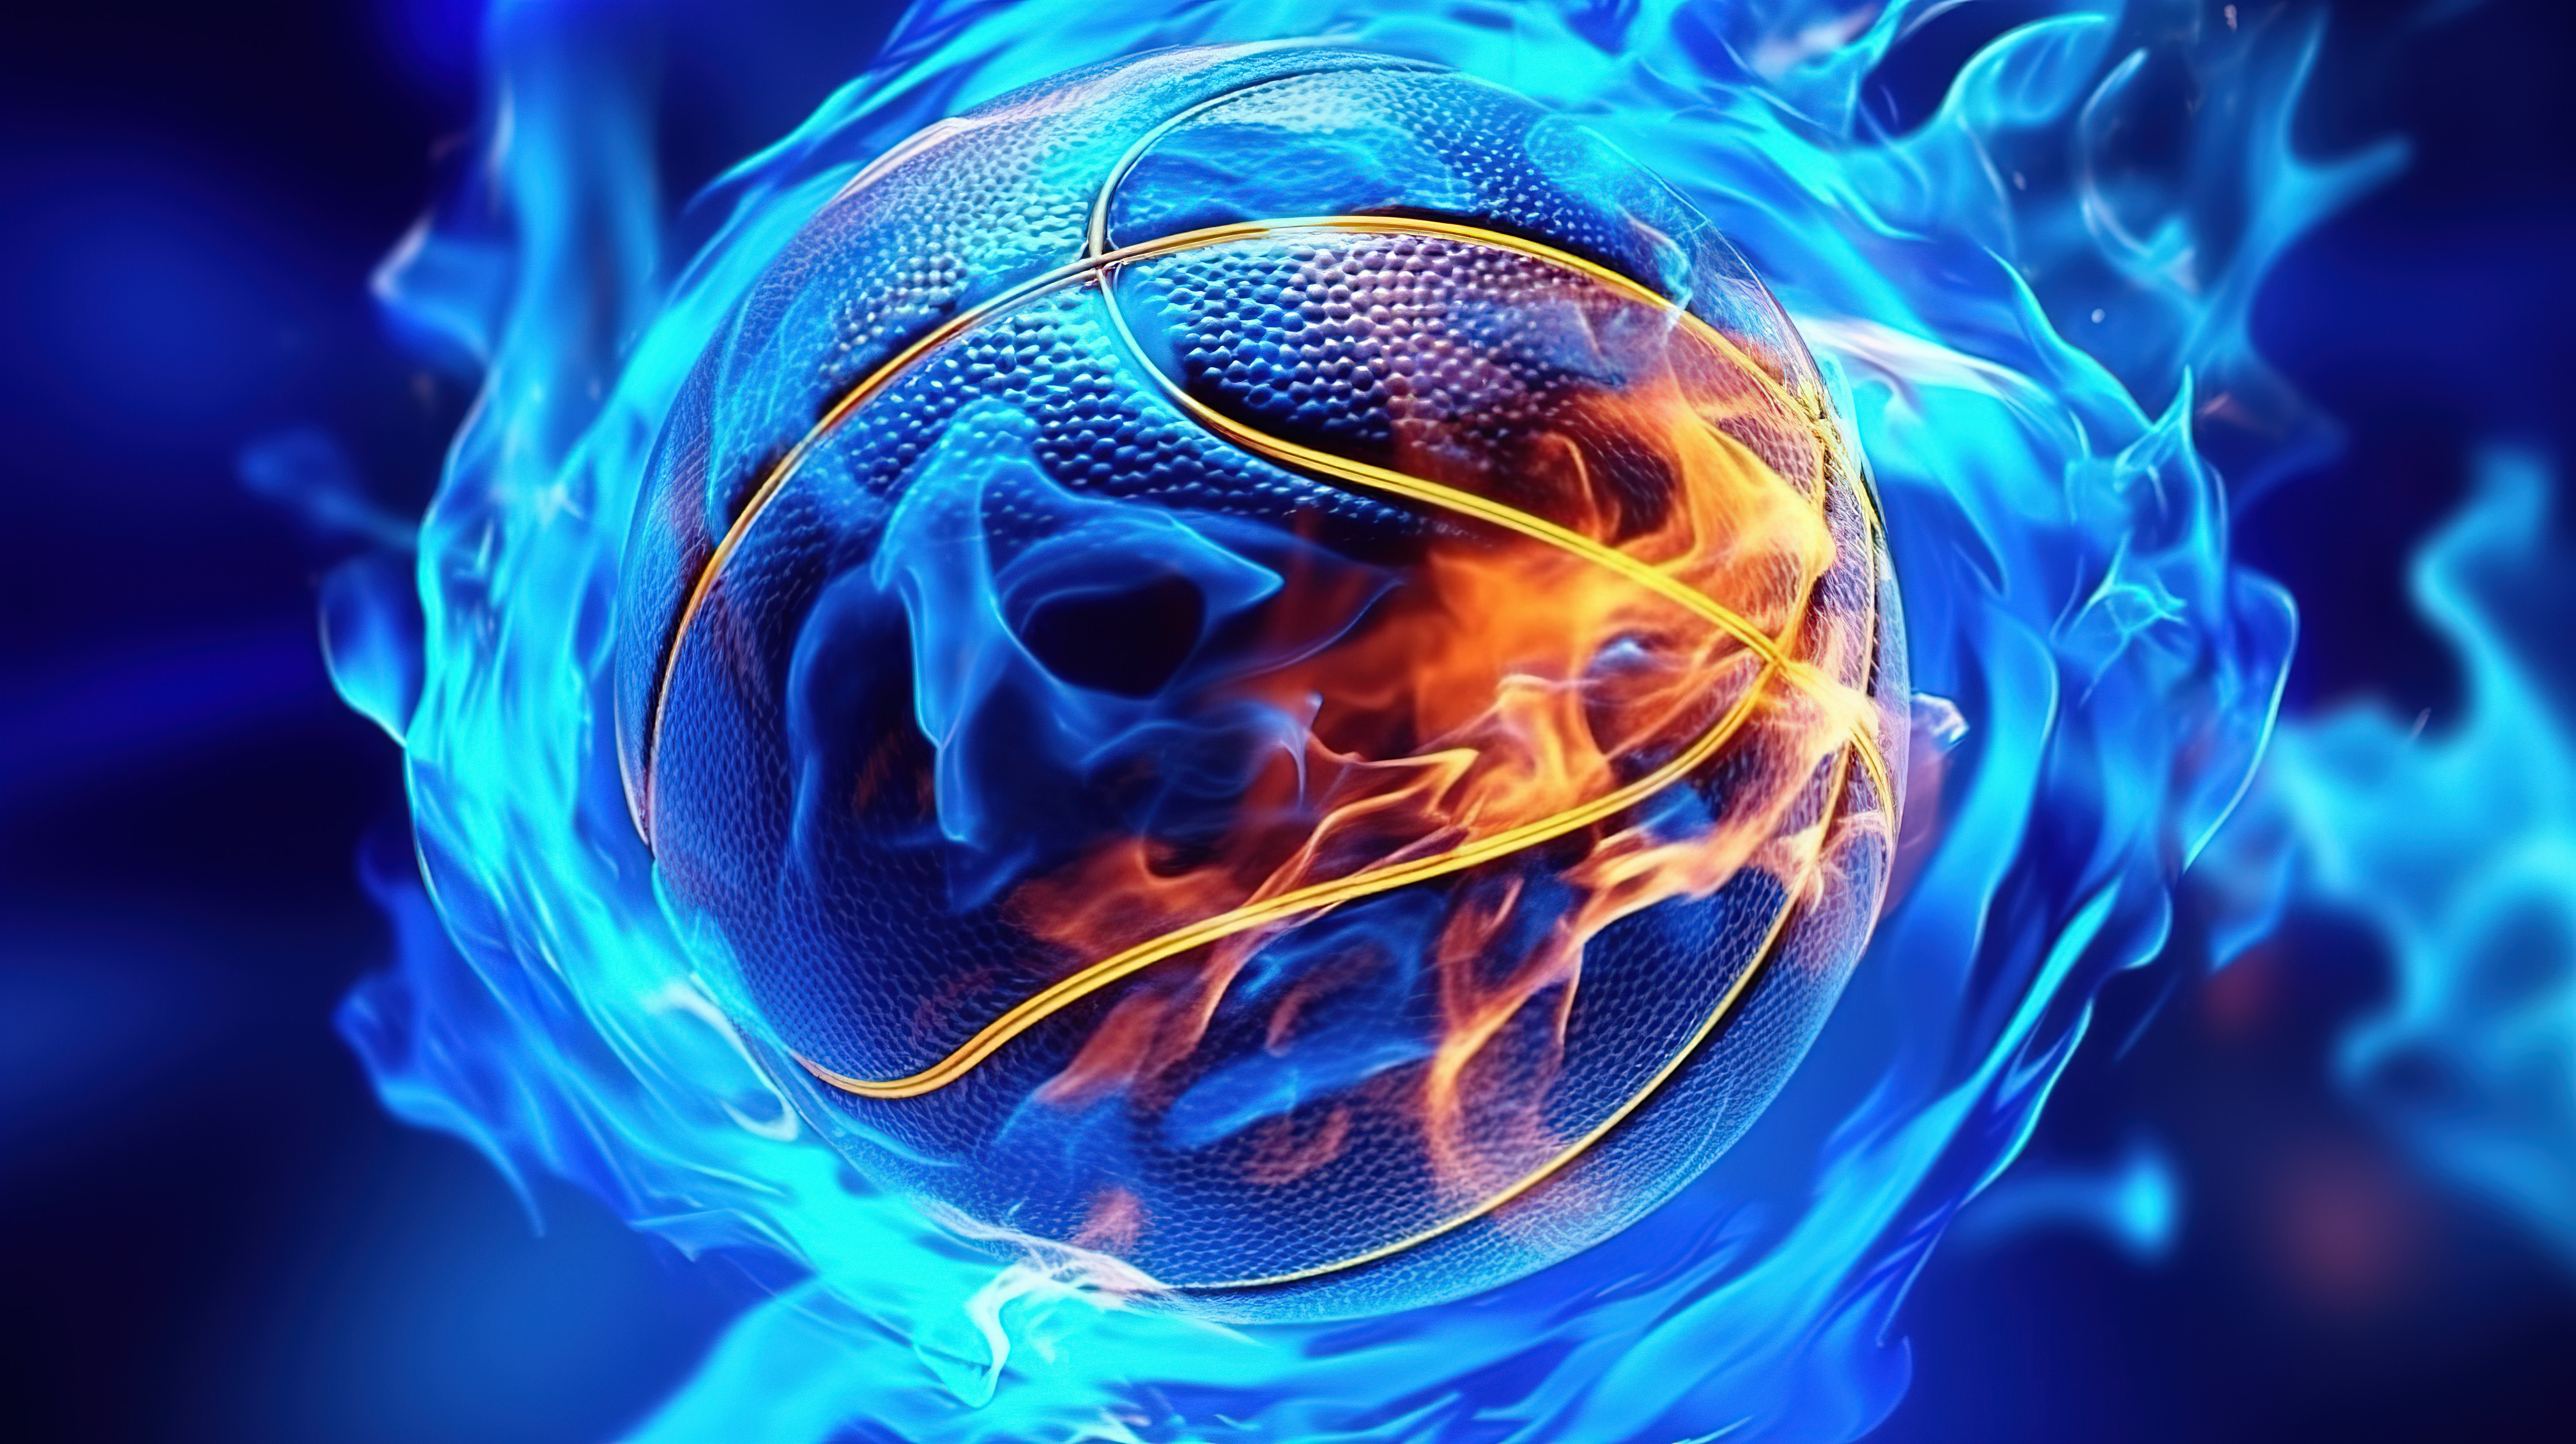 运动演示呈现蓝色抽象篮球物体的 3D 概念图片